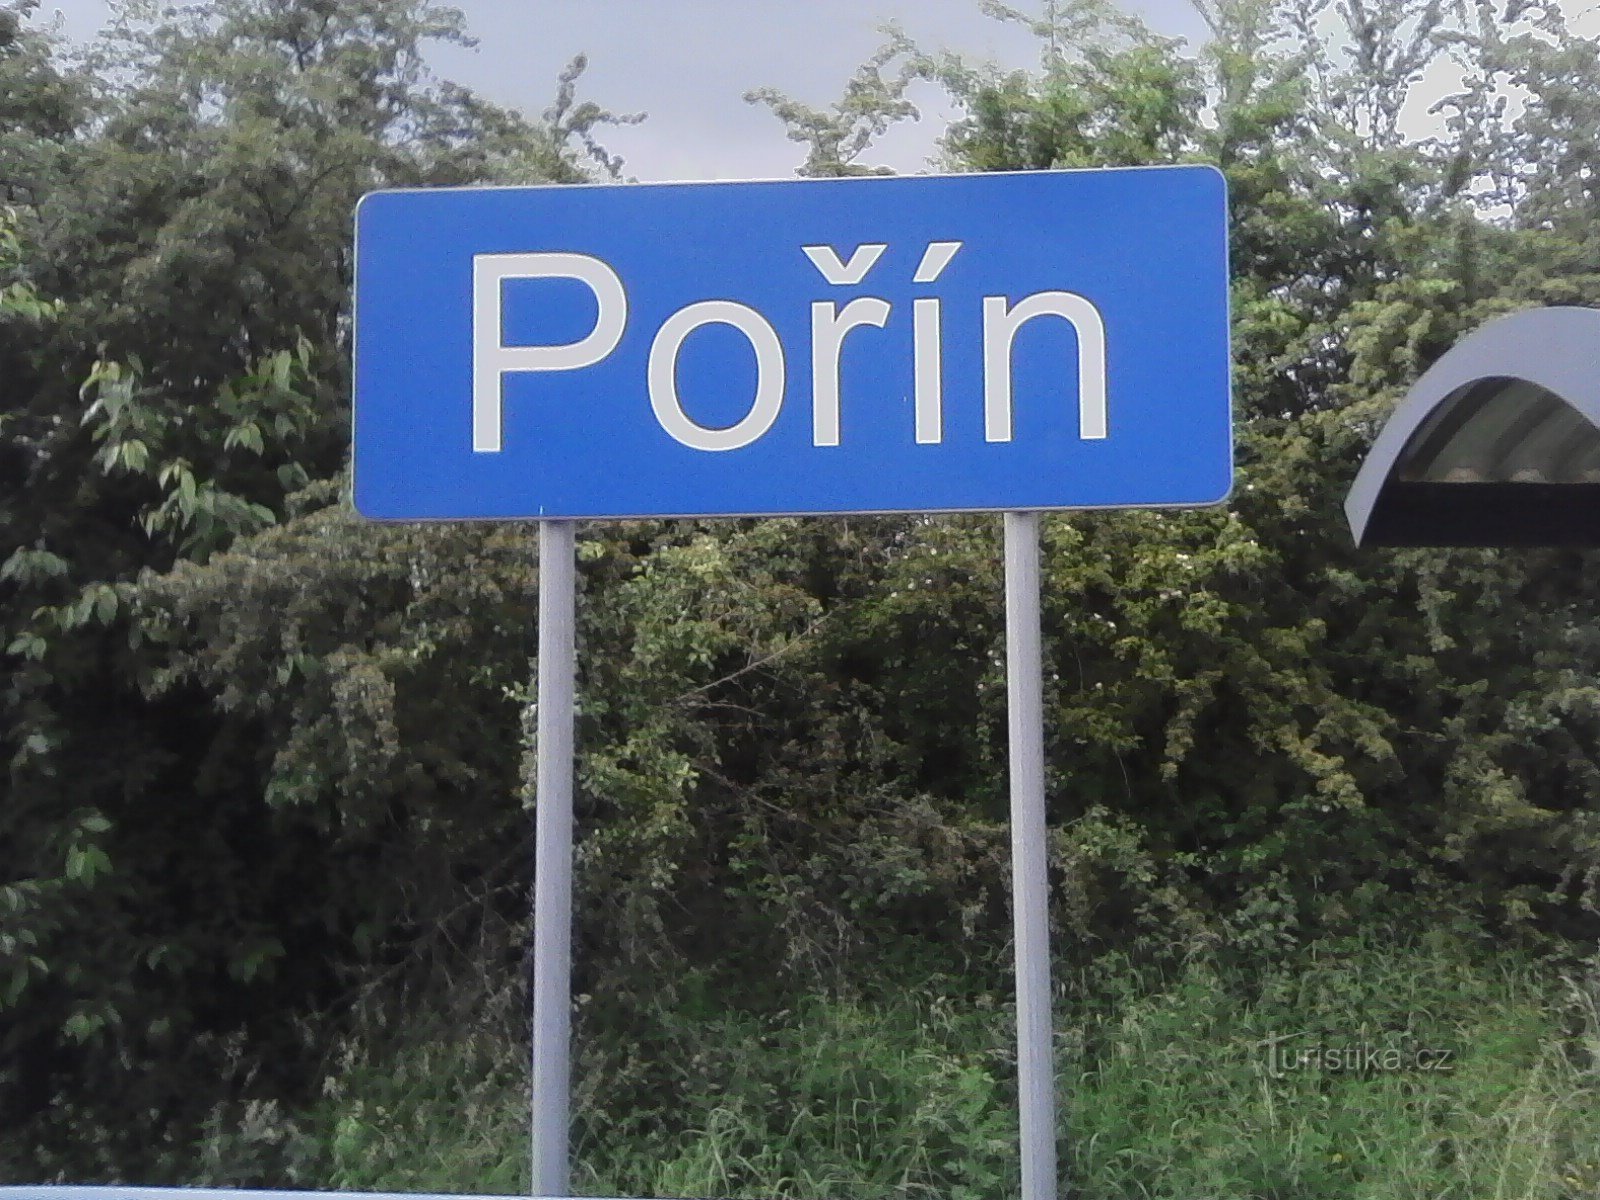 1. Stajanje vlaka u Pořínu - početak putovanja.